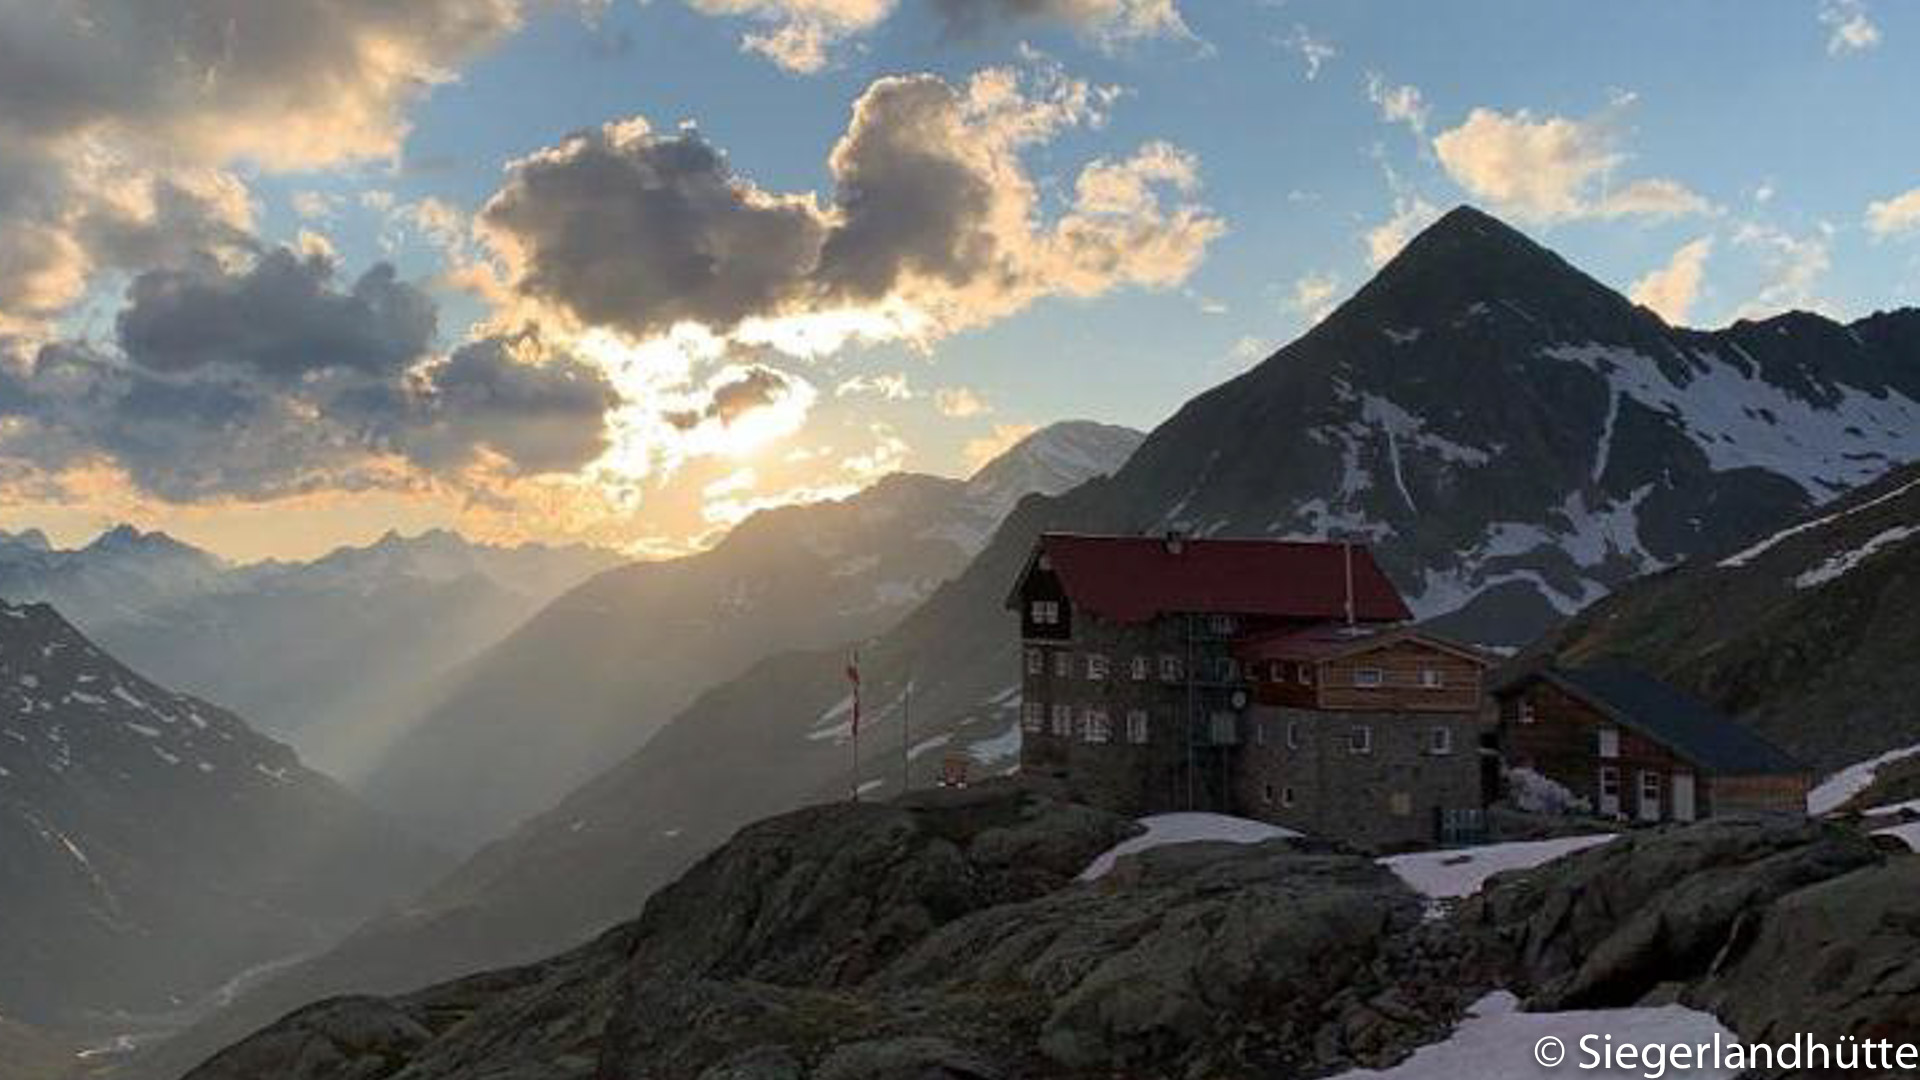 Die Siegerlandhütte bietet eine herrliche Aussicht auf die Alpen